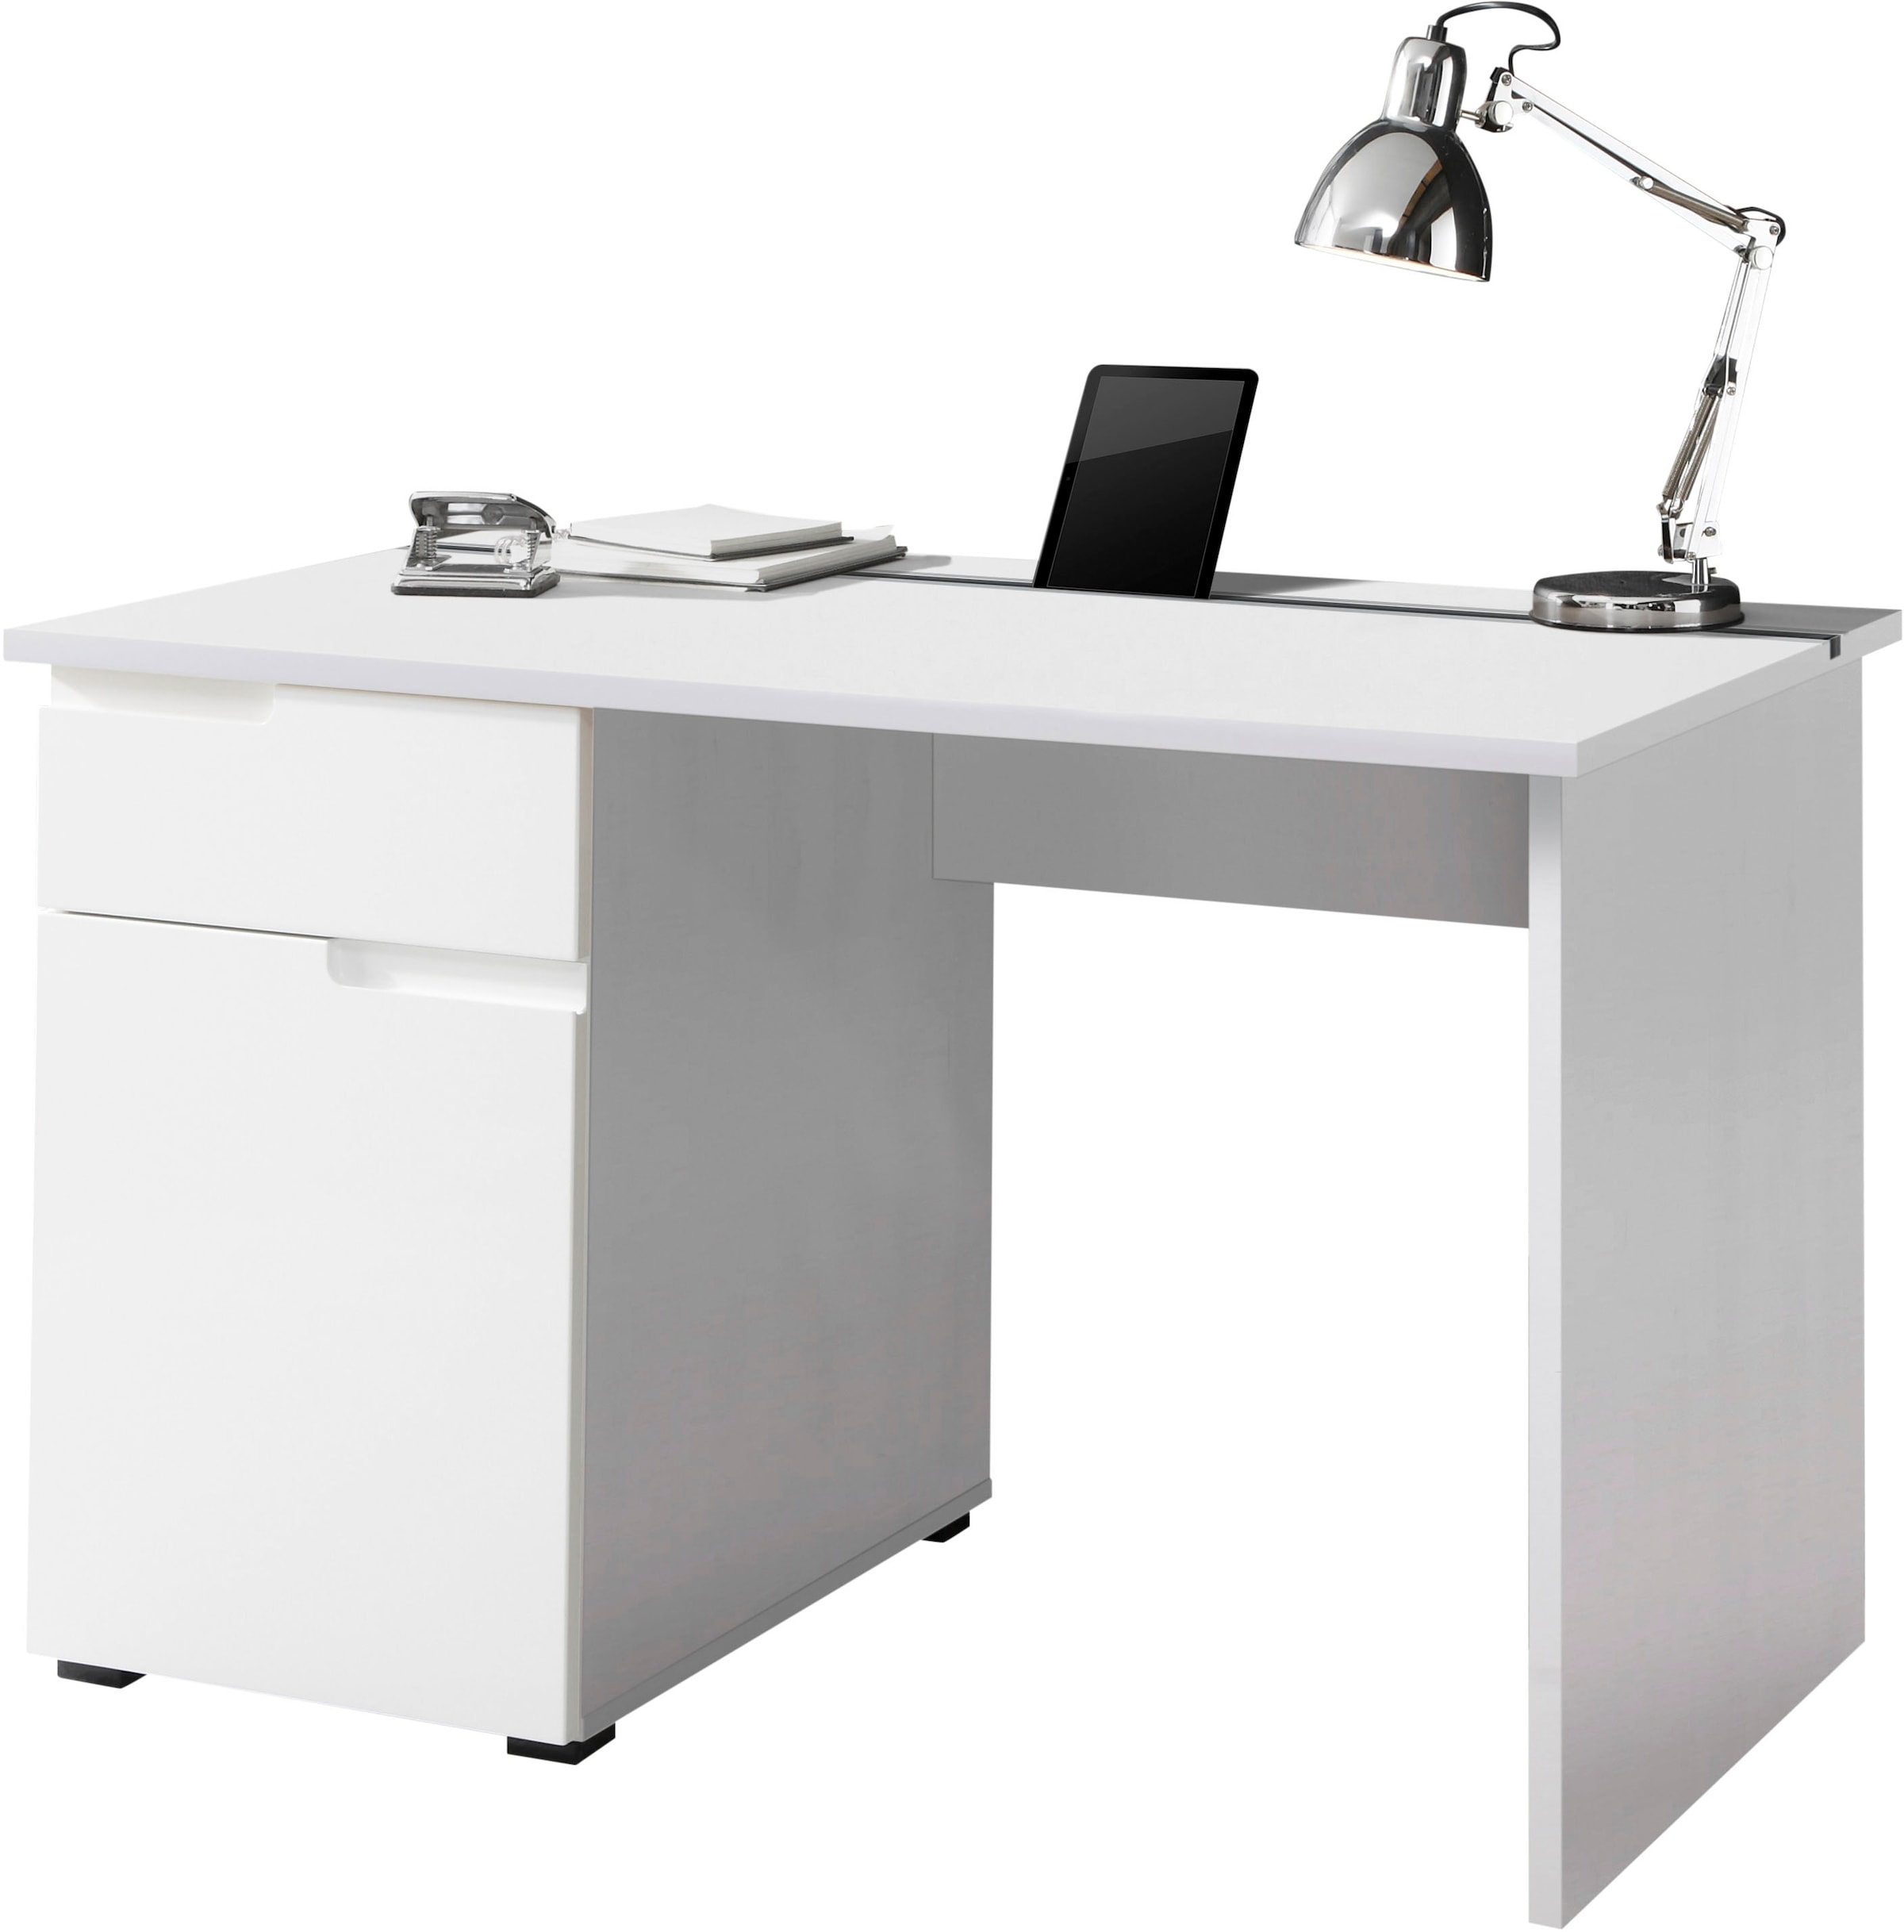 BEGA OFFICE Schreibtisch »Spice«, weiß hochglanz, Home Office Desk mit Schubkästen